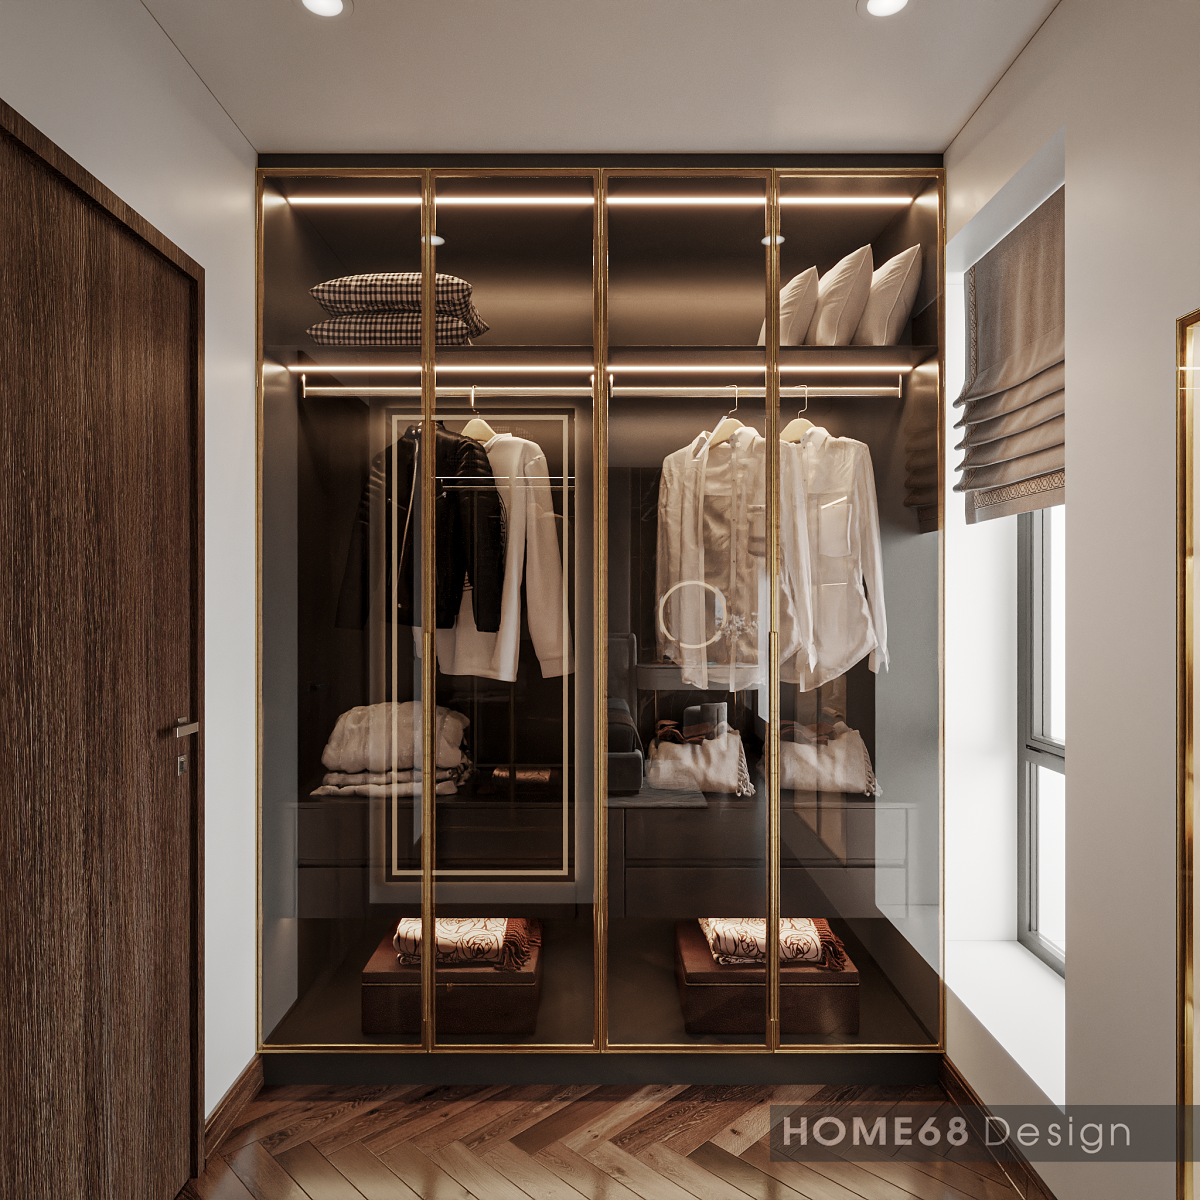 Tủ quần áo với chất liệu khung gỗ mdf sơn men cánh kính cũng được tích hợp thiết kế bên trong phòng ngủ